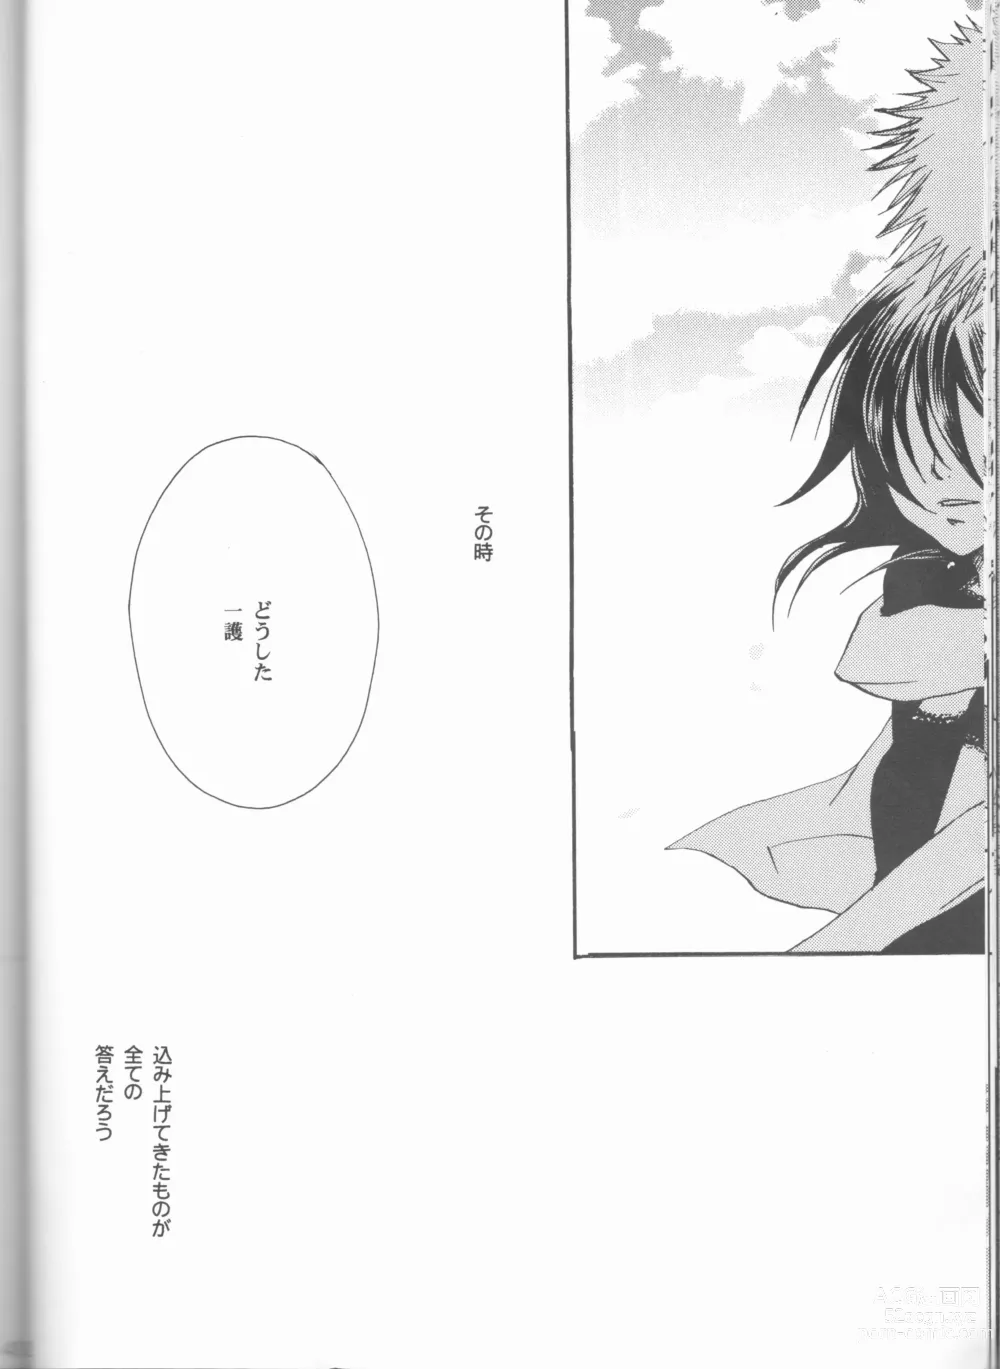 Page 42 of doujinshi Kimi o suki ni natte hajimete no natsu ga kuru.